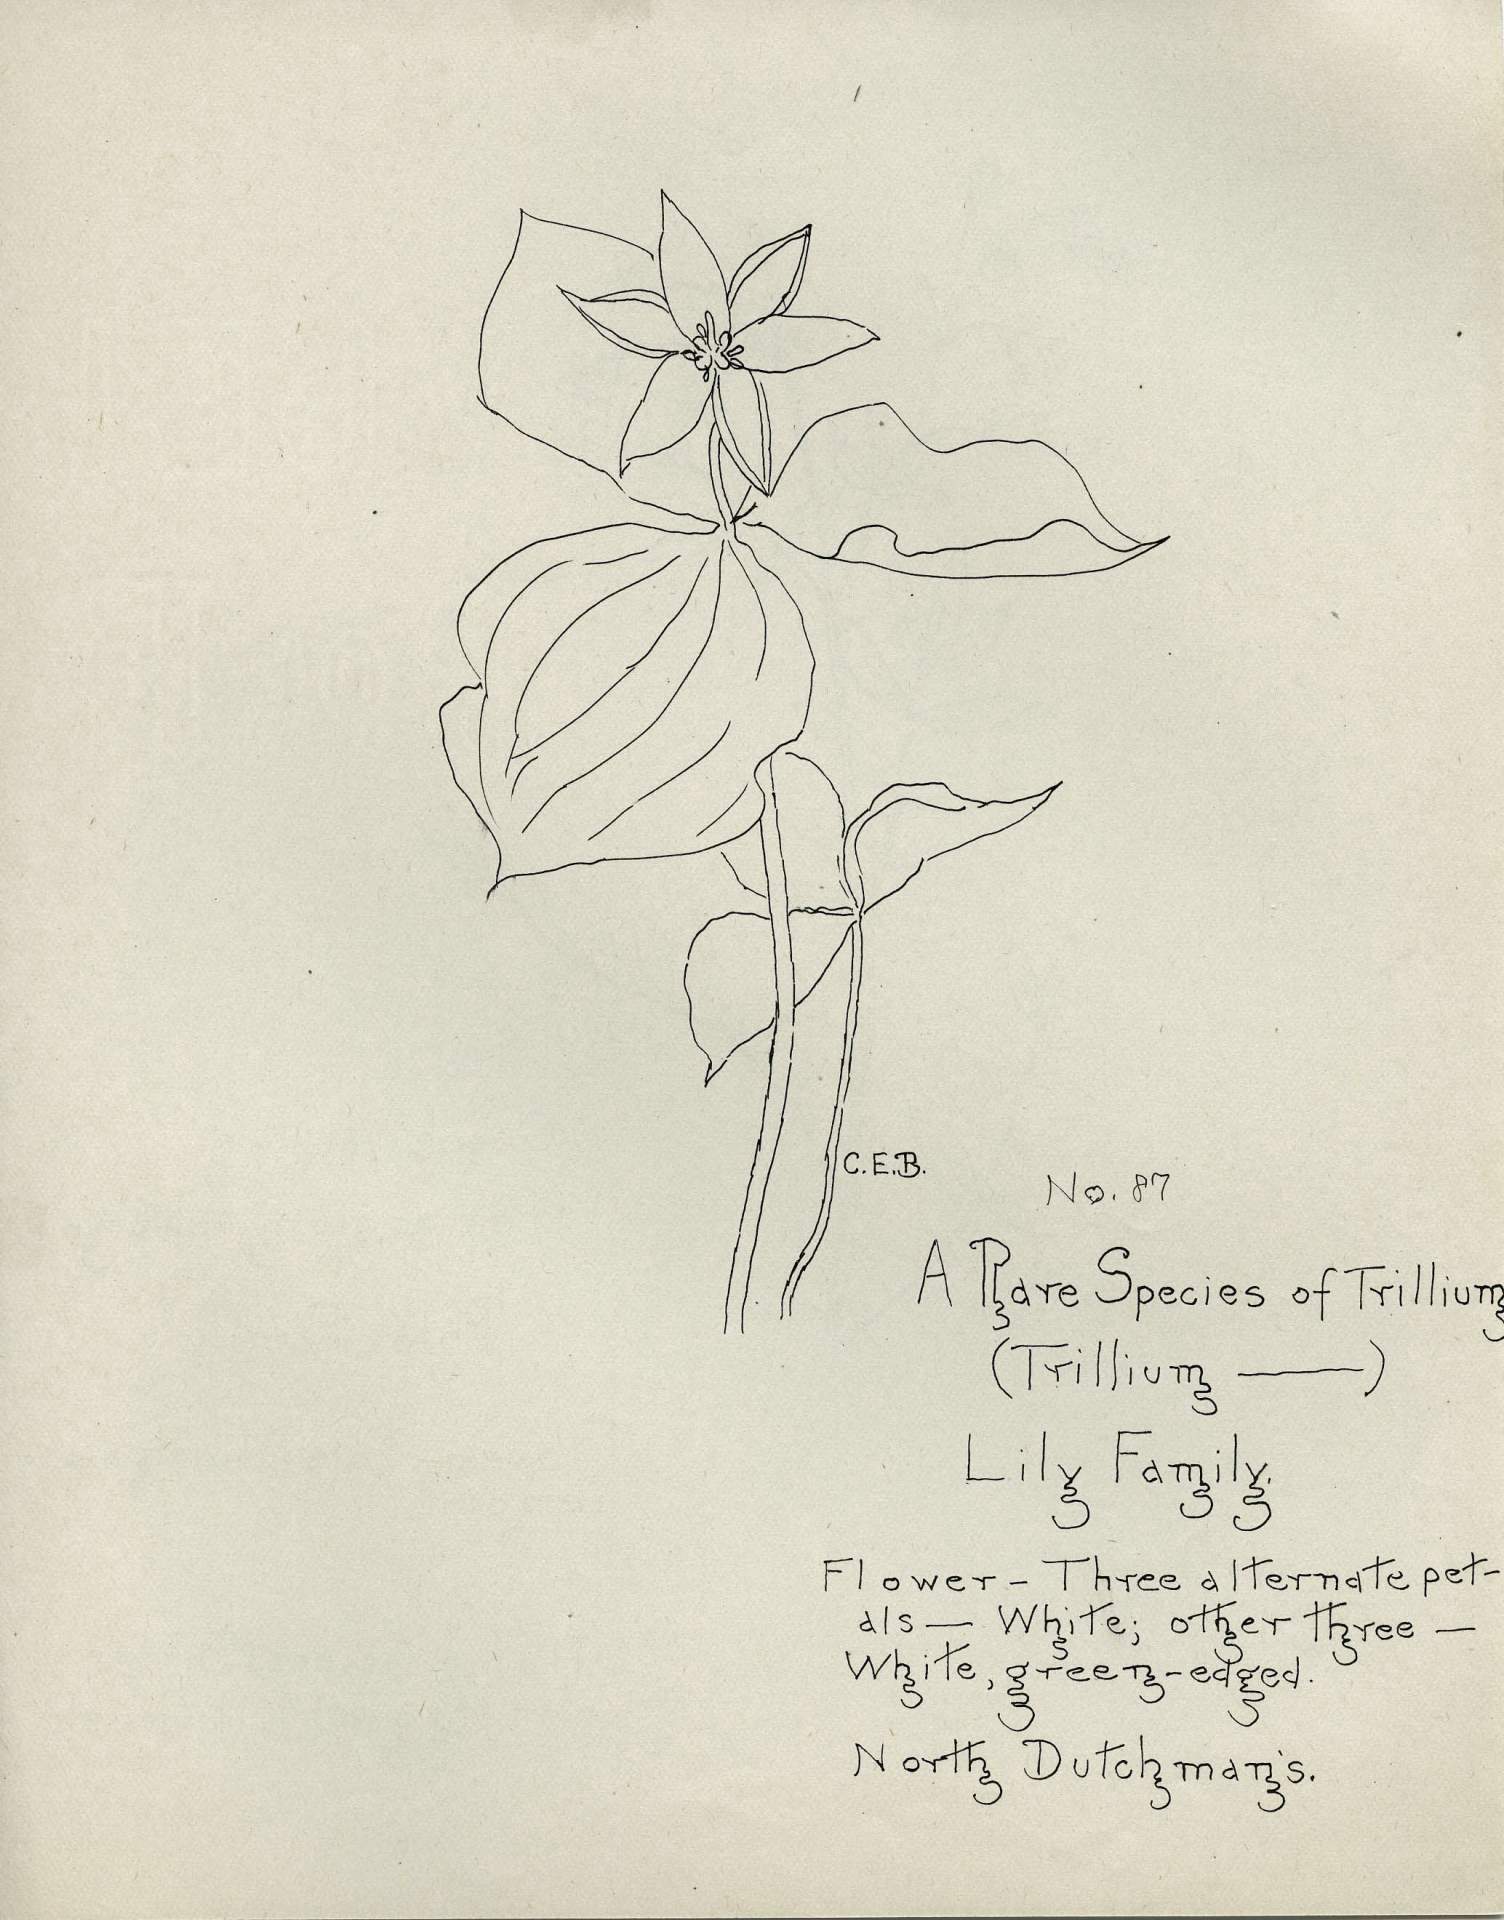 A Rare Species of Trillium